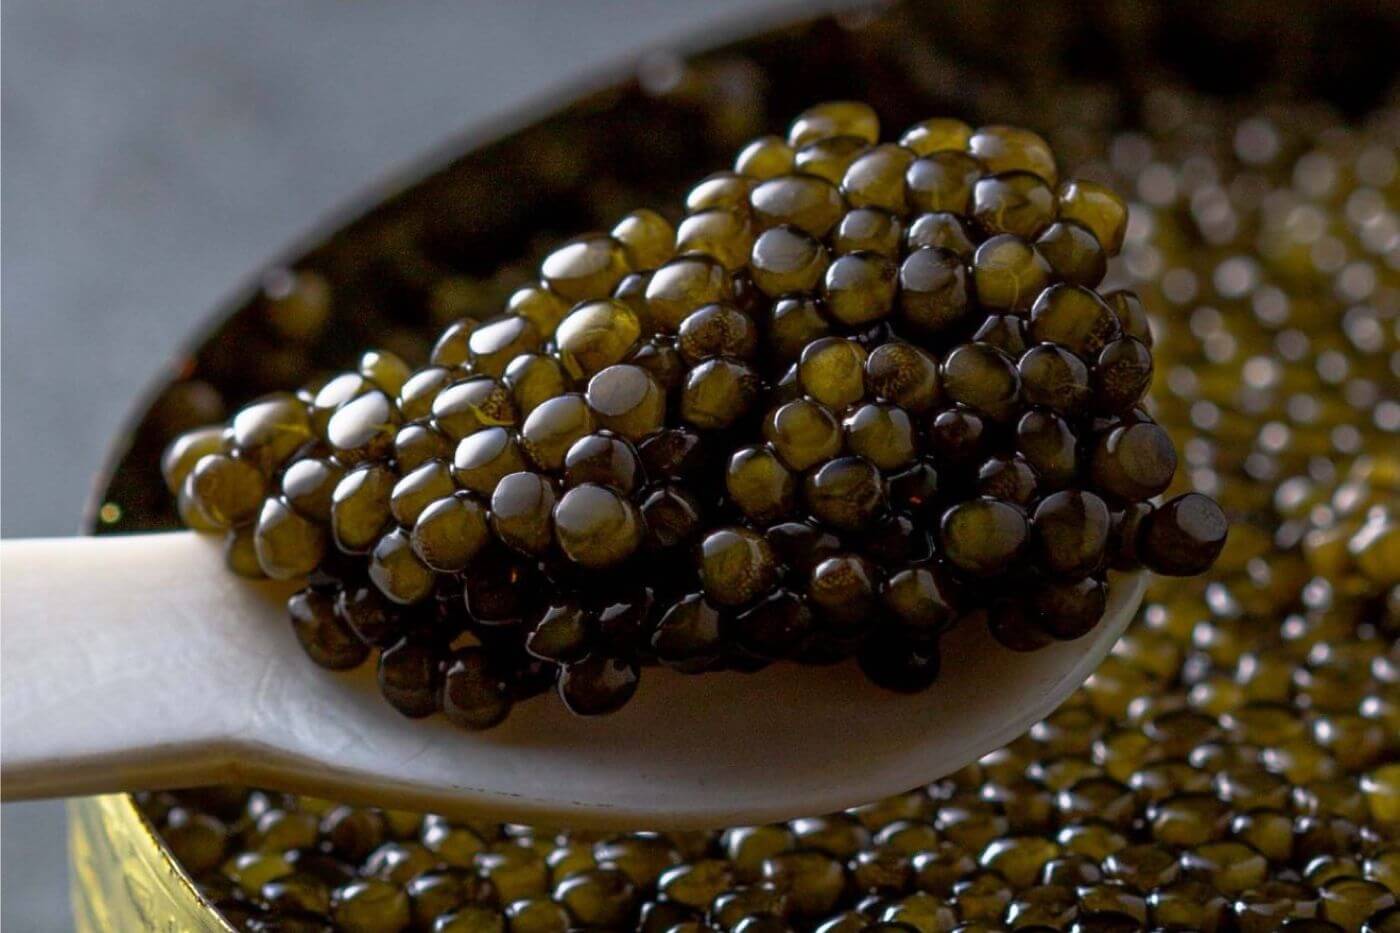 Kaluga Caviar: The Ultimate Guide